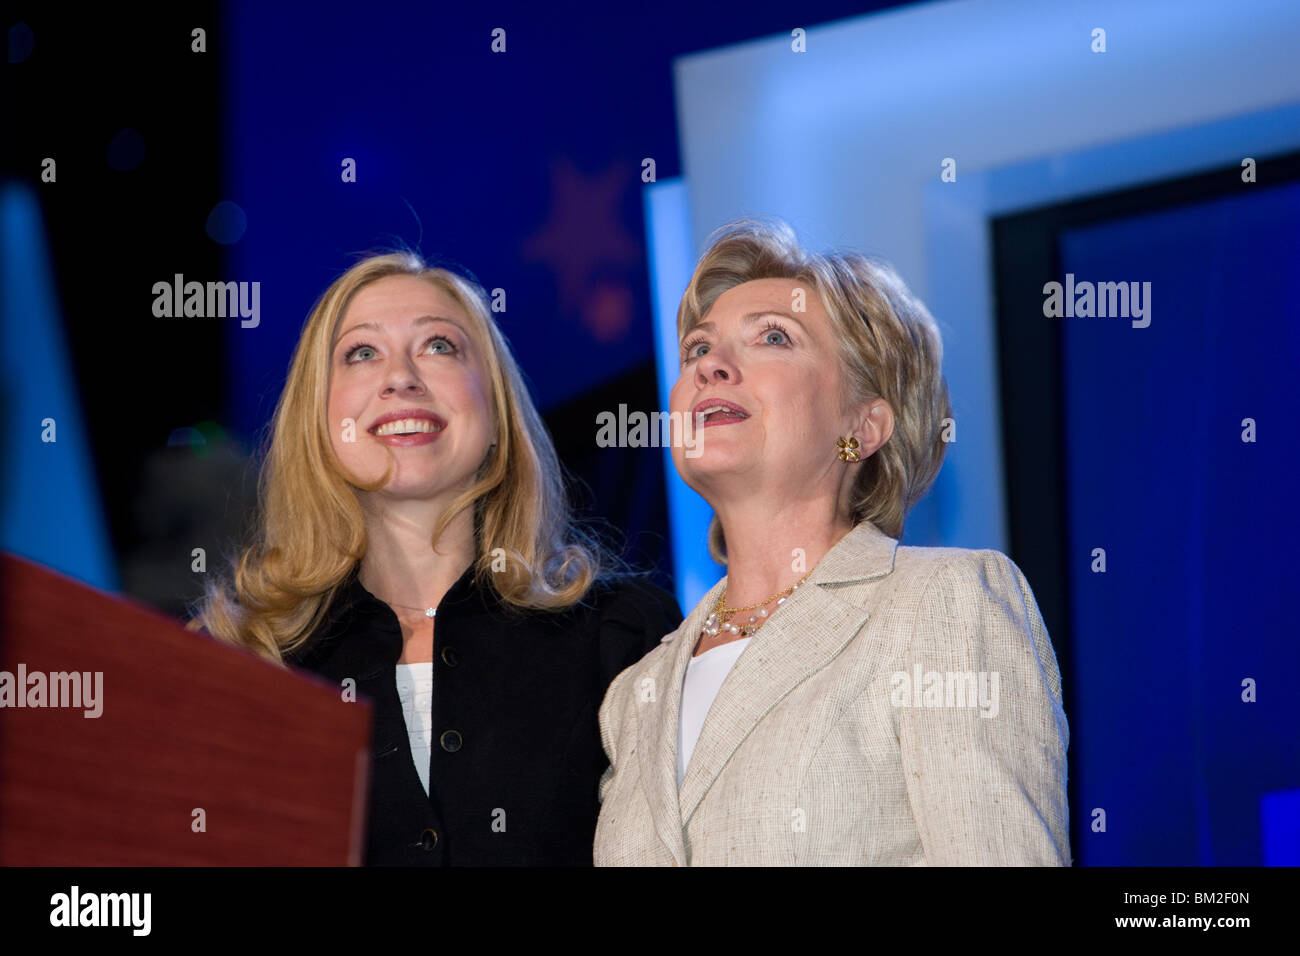 Chelsea y su madre Hilary Clinton Foto de stock